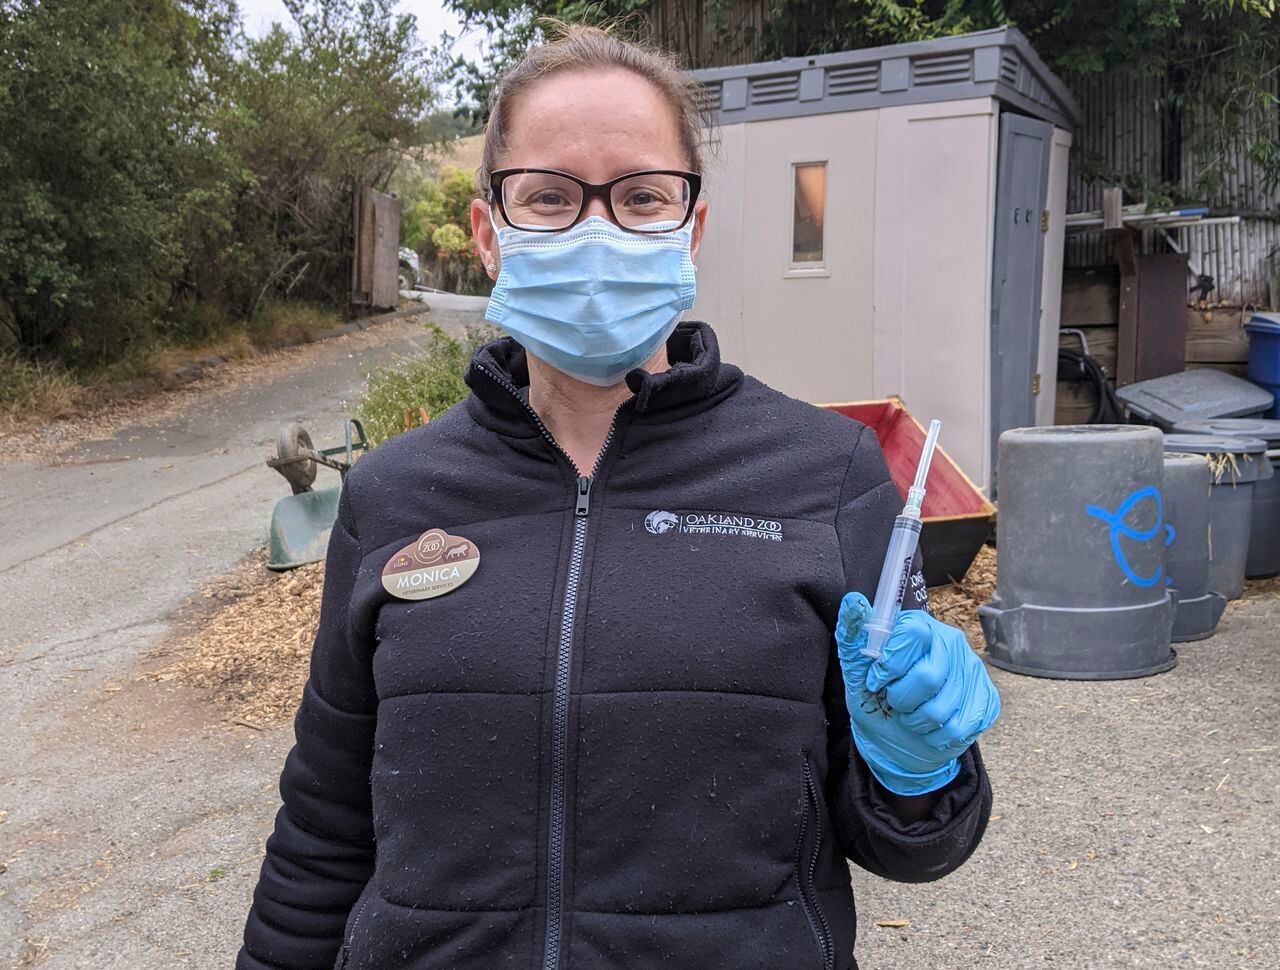 Monica Fox posa luego de inyectar la vacuna experimental en el Oakland Zoo, en California. Este lugar está vacunando a sus felinos grandes, osos y hurones contra el coronavirus con una vacuna experimental. (Oakland Zoo via AP)